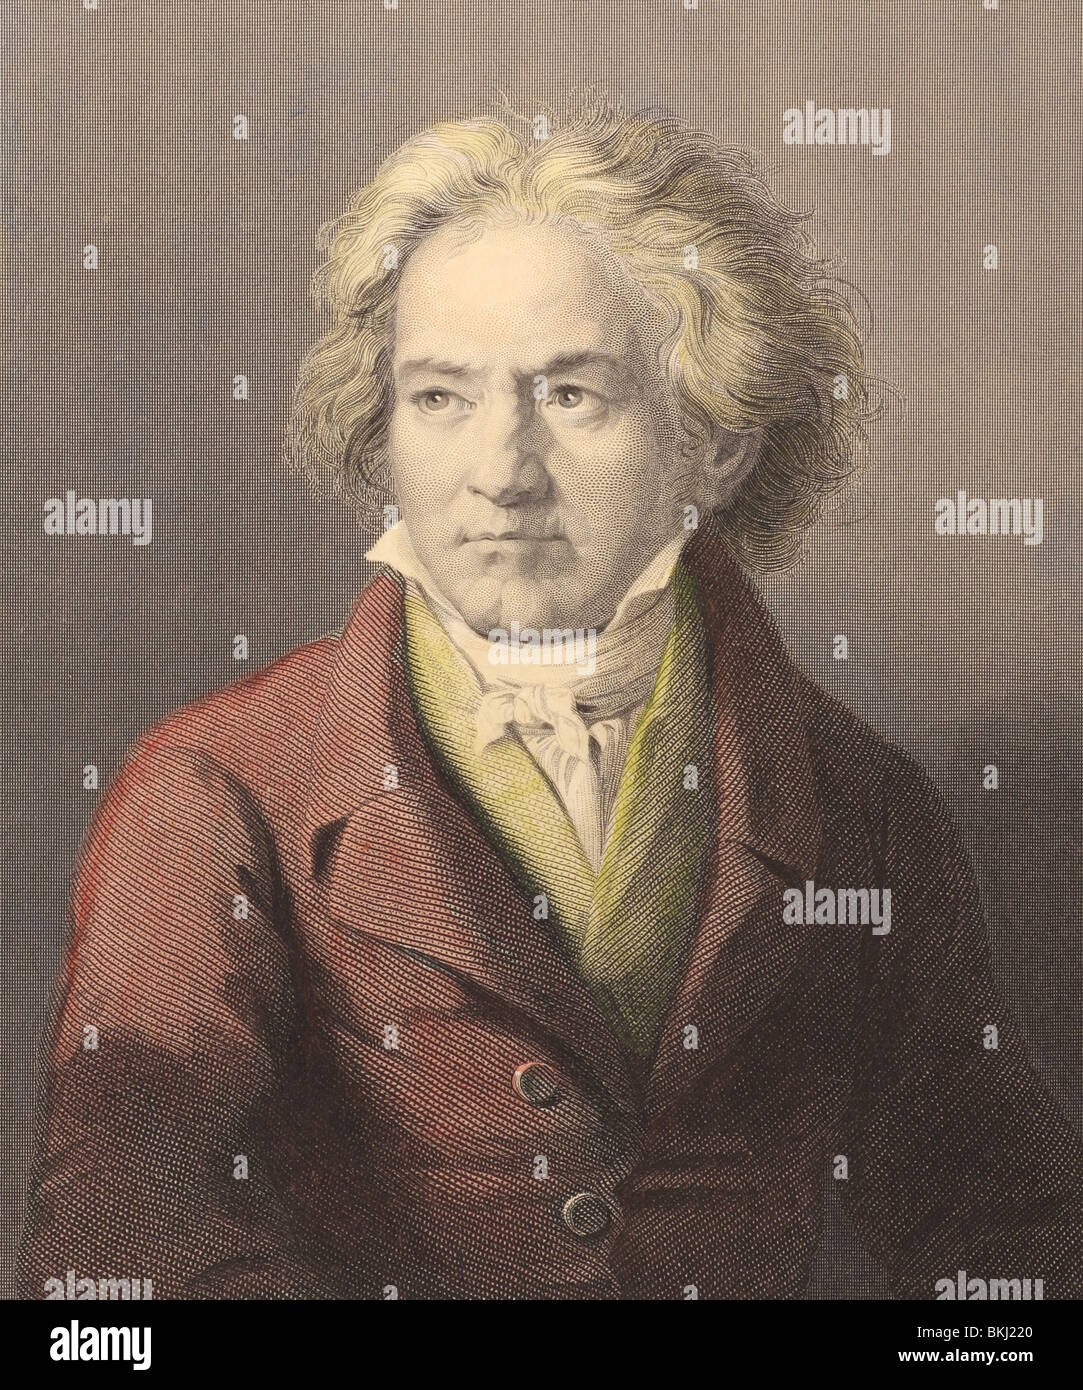 Ludwig van Beethoven (1770-1827) gravure sur des années 1800. Le compositeur et pianiste allemand. Banque D'Images